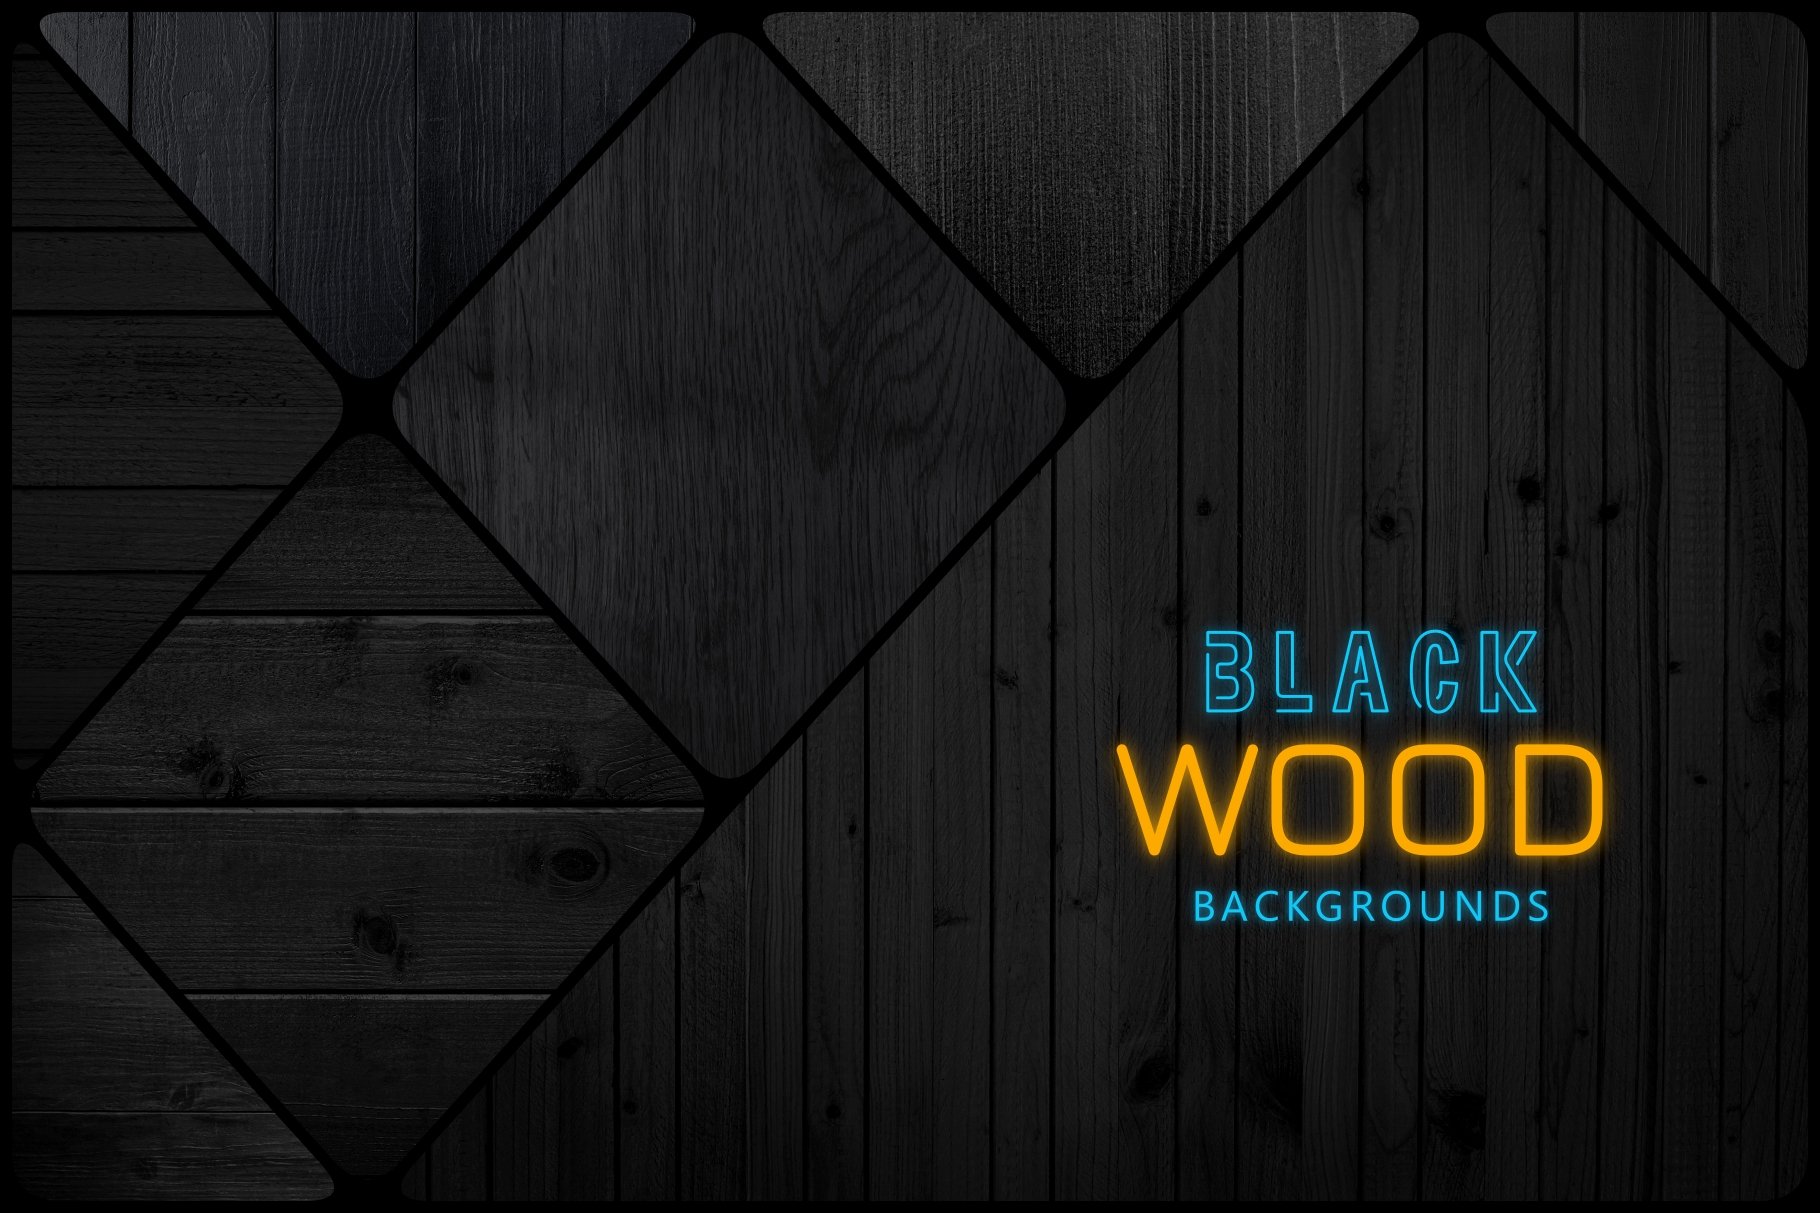 11 blackwoodbackgrounds1 823